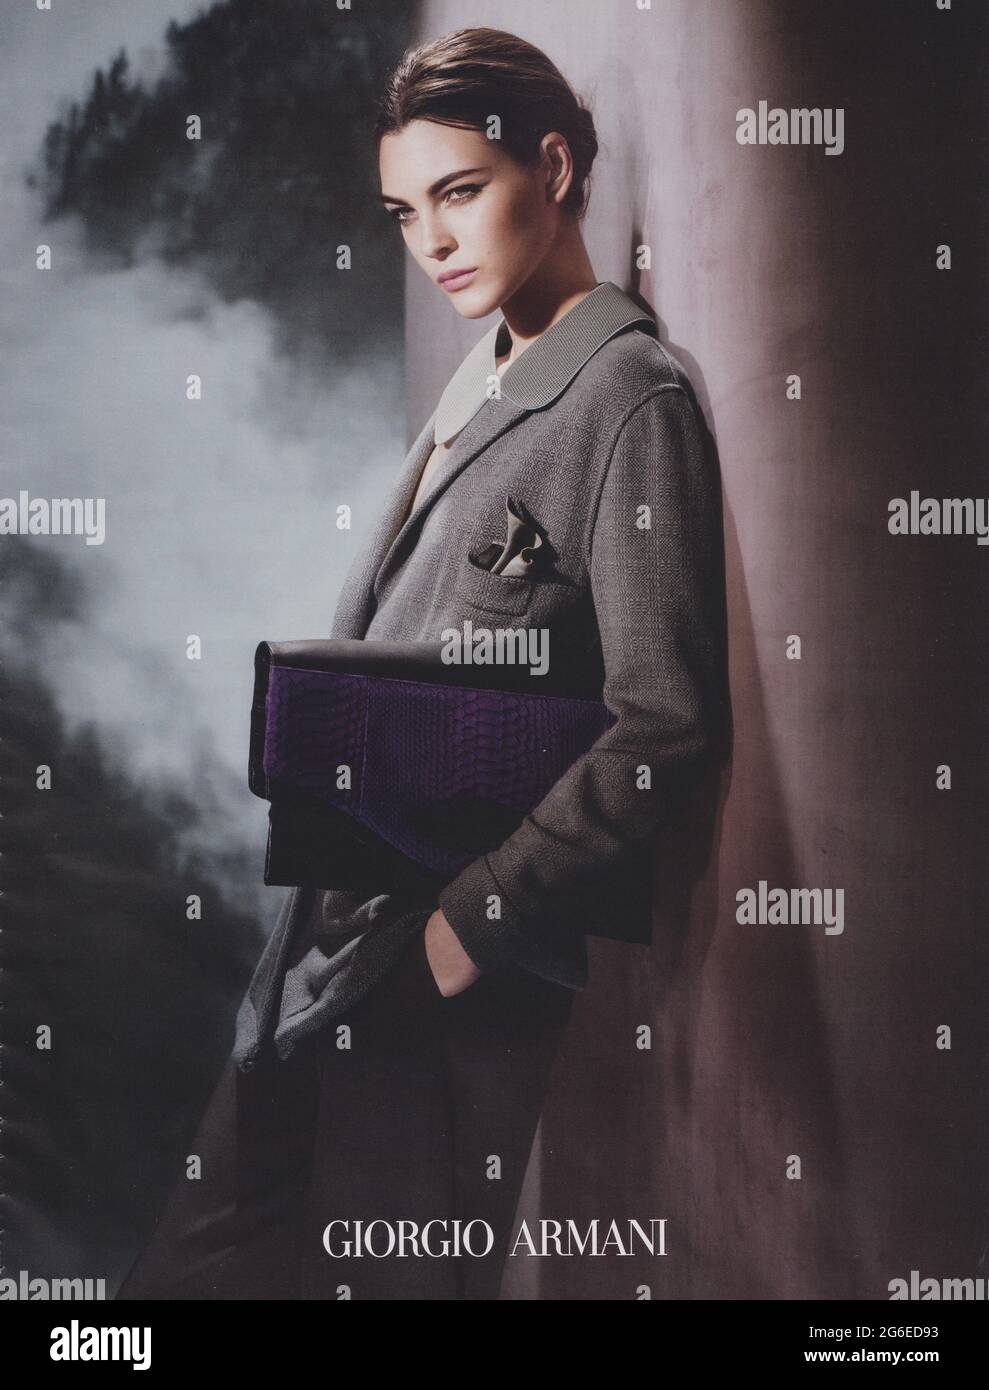 Poster pubblicitari Giorgio Armani con Vittoria Ceretti in magazzino carta dal 2015 anno, pubblicità creative Giorgio Armani annuncio da 2010s Foto Stock